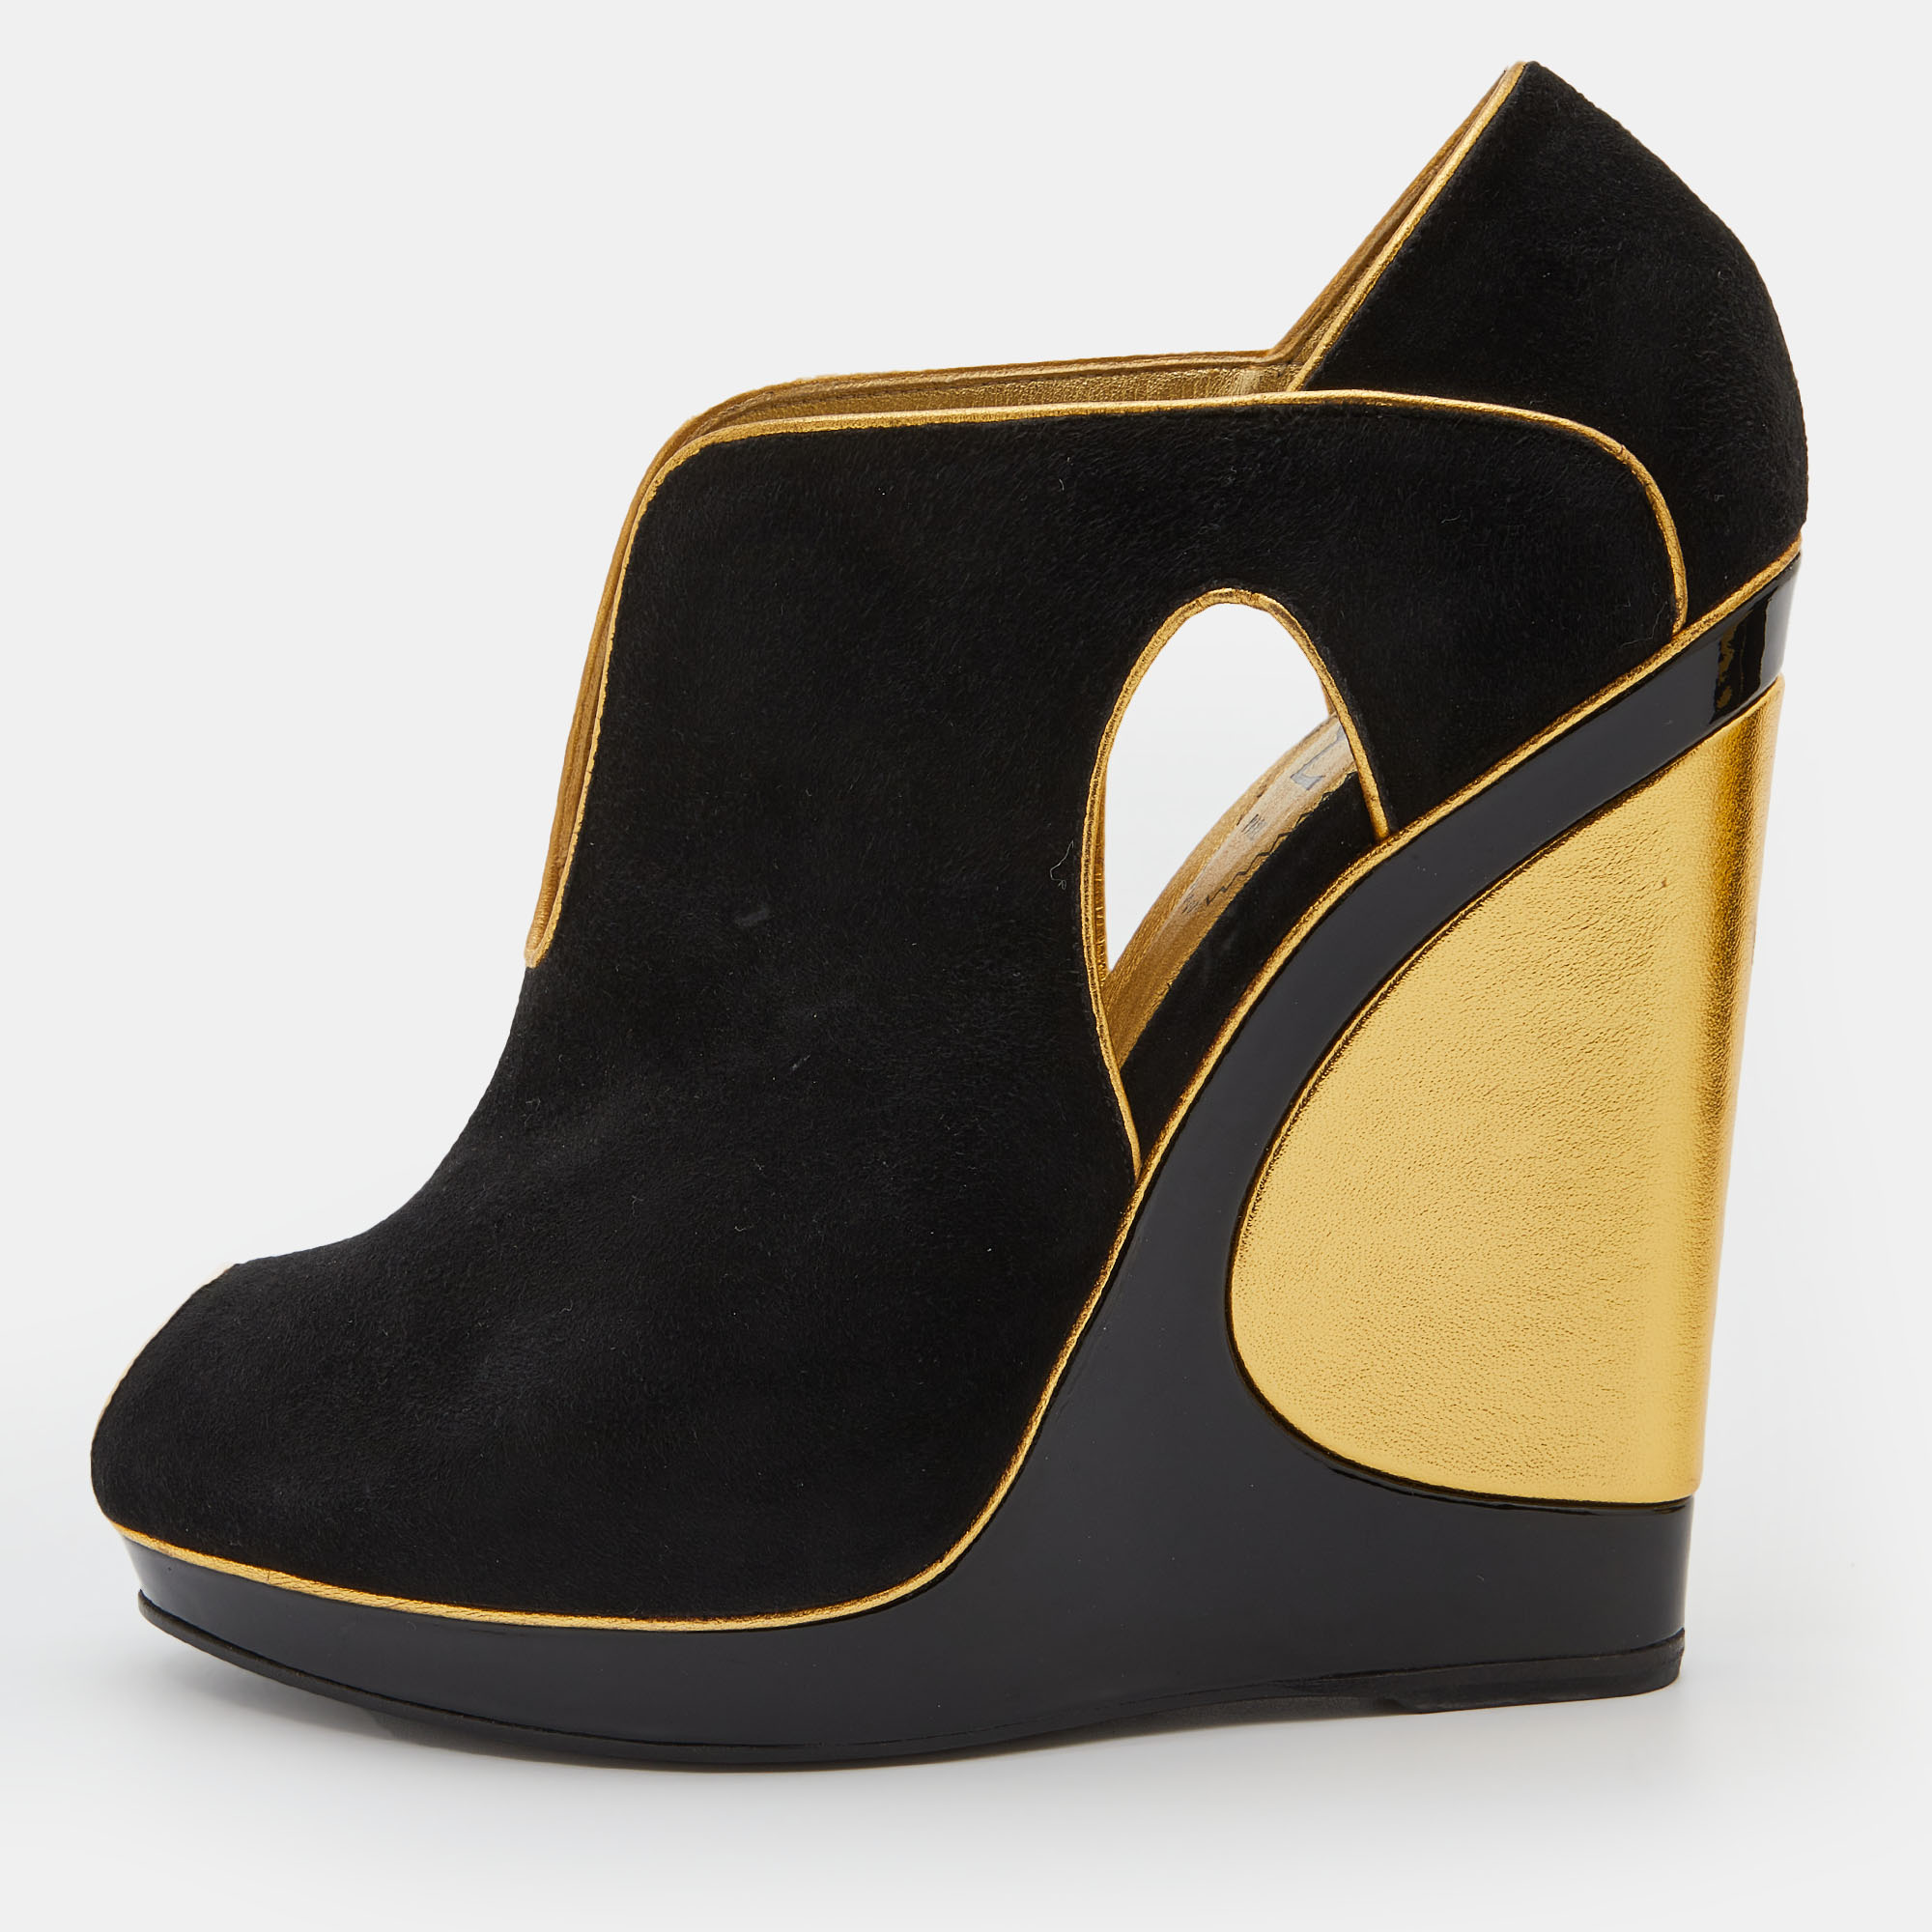 Yves saint laurent black/gold cut-out suede peep toe platform wedge pumps size 36